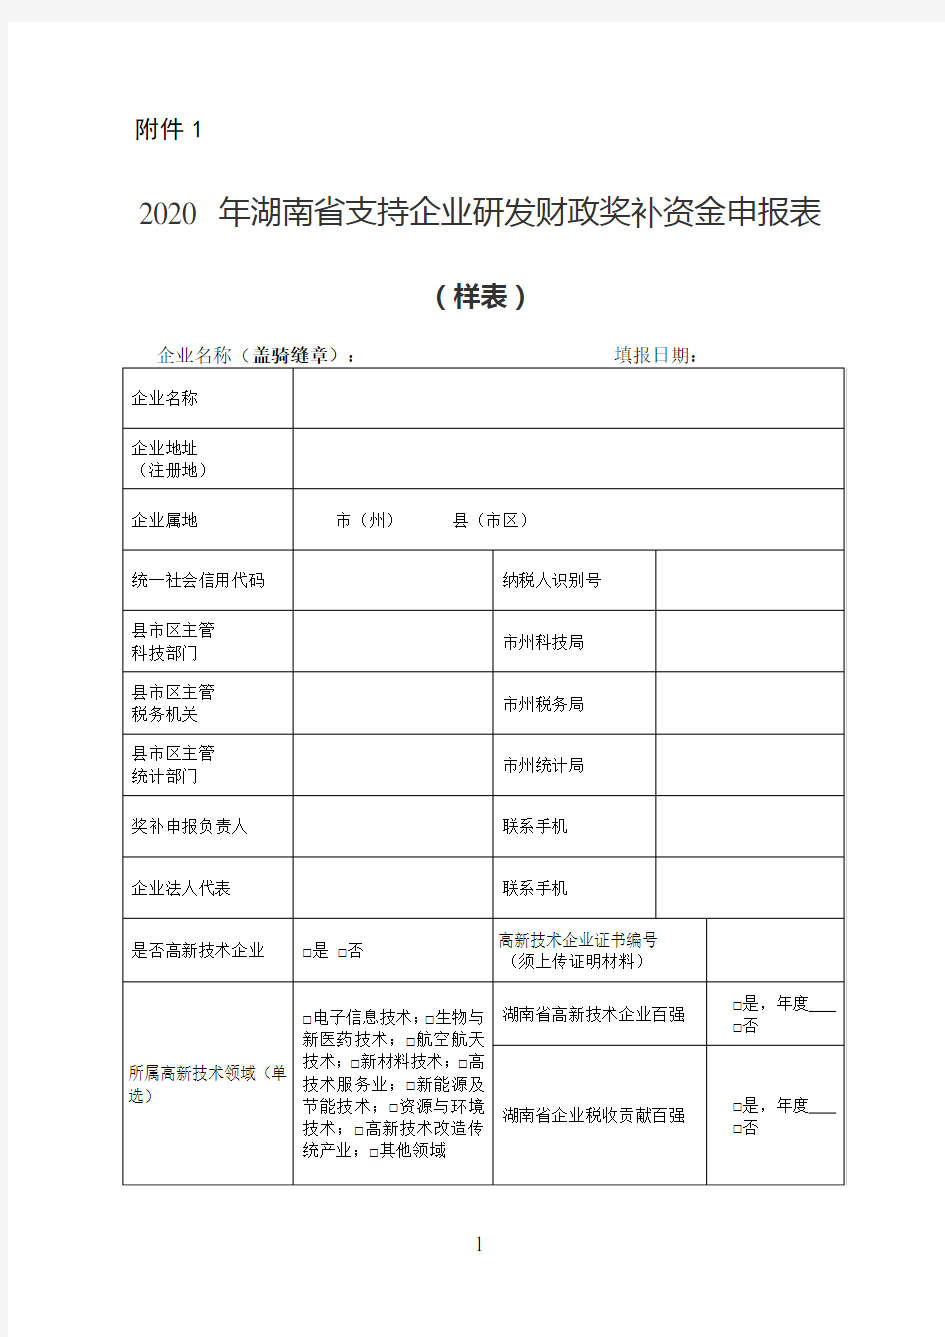 2020年湖南省支持企业研发财政奖补资金申报表(样表)